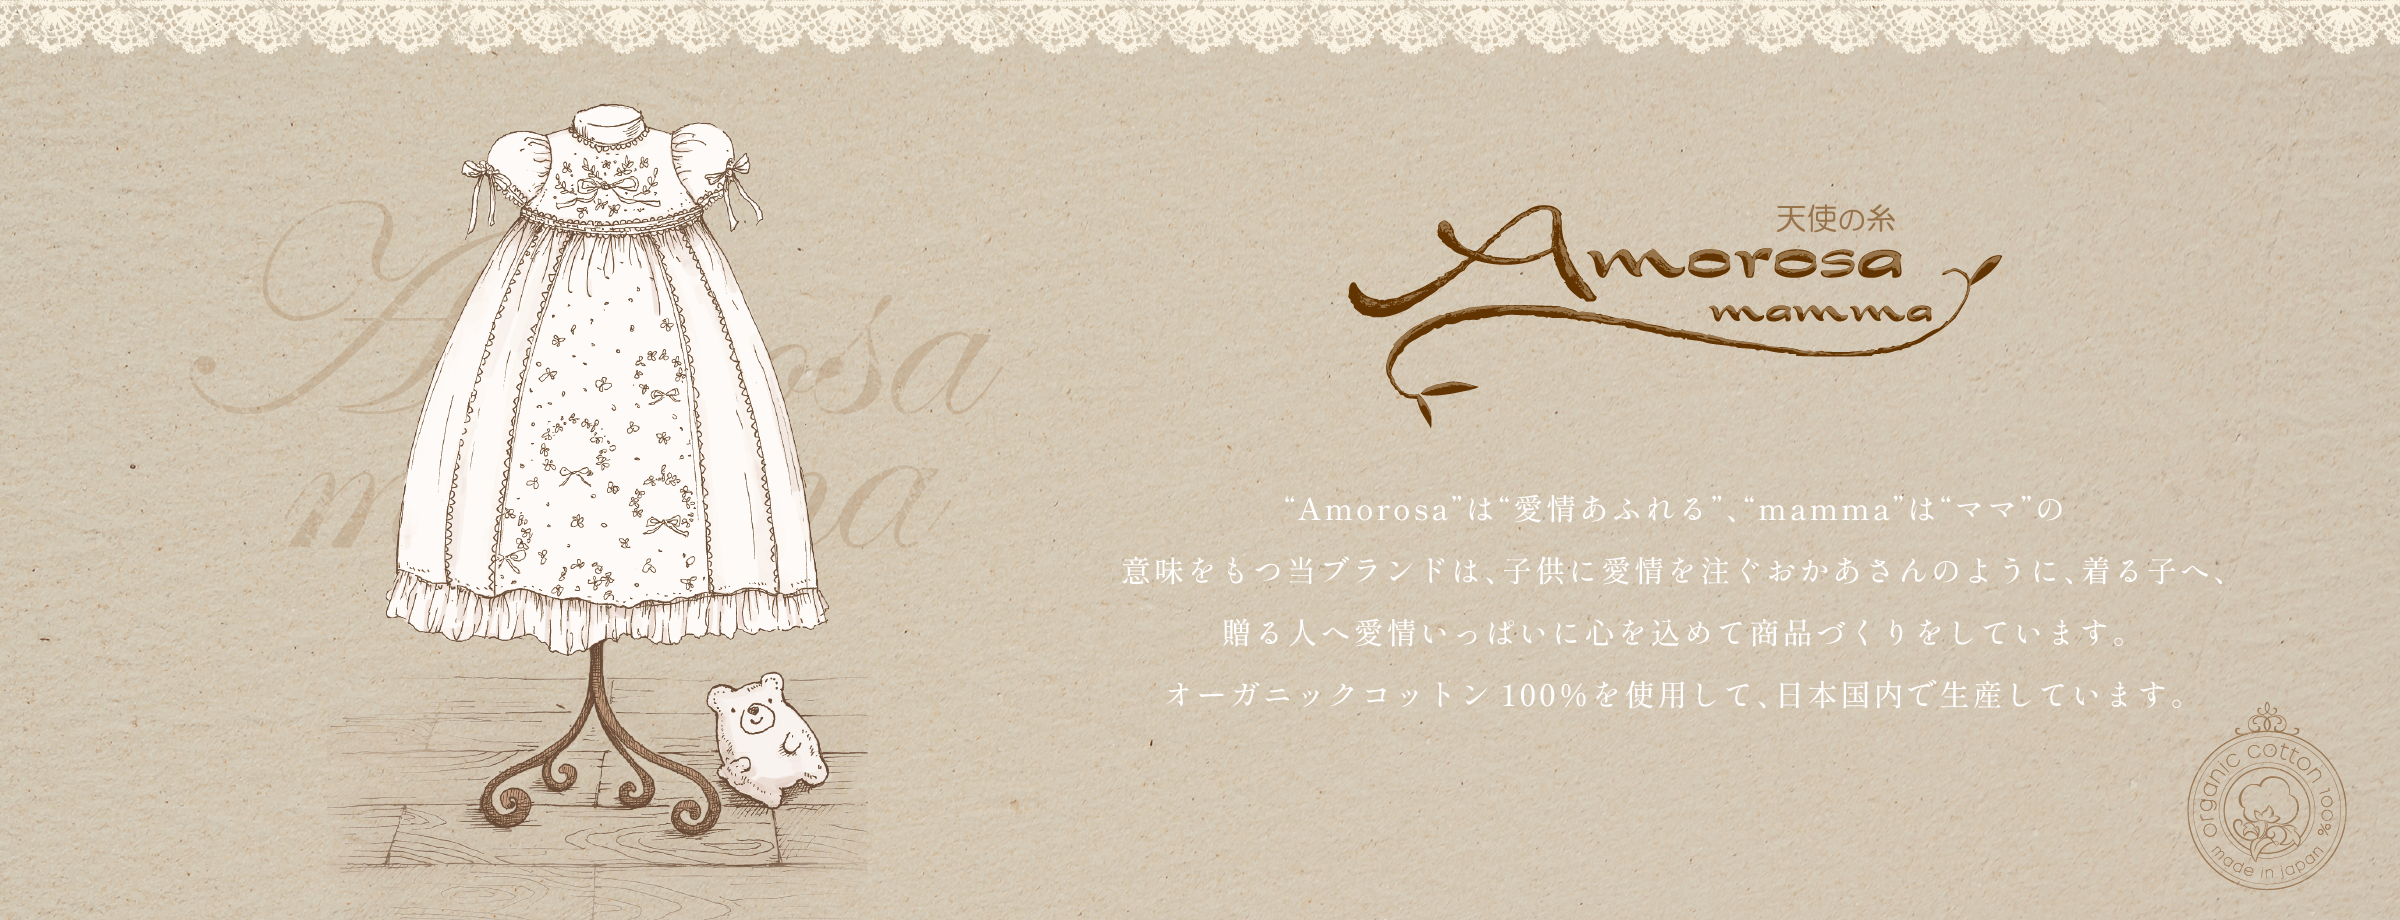 “Amorosa”は“愛情あふれる”、“mamma”は“ママ”の意味を持つ当ブランドは、子供に愛情を注ぐおかあさんのように、着る子へ、贈る人へ愛情いっぱいに心を込めて商品づくりをしています。オーガニックコットン100%を使用して、日本国内で生産しています。